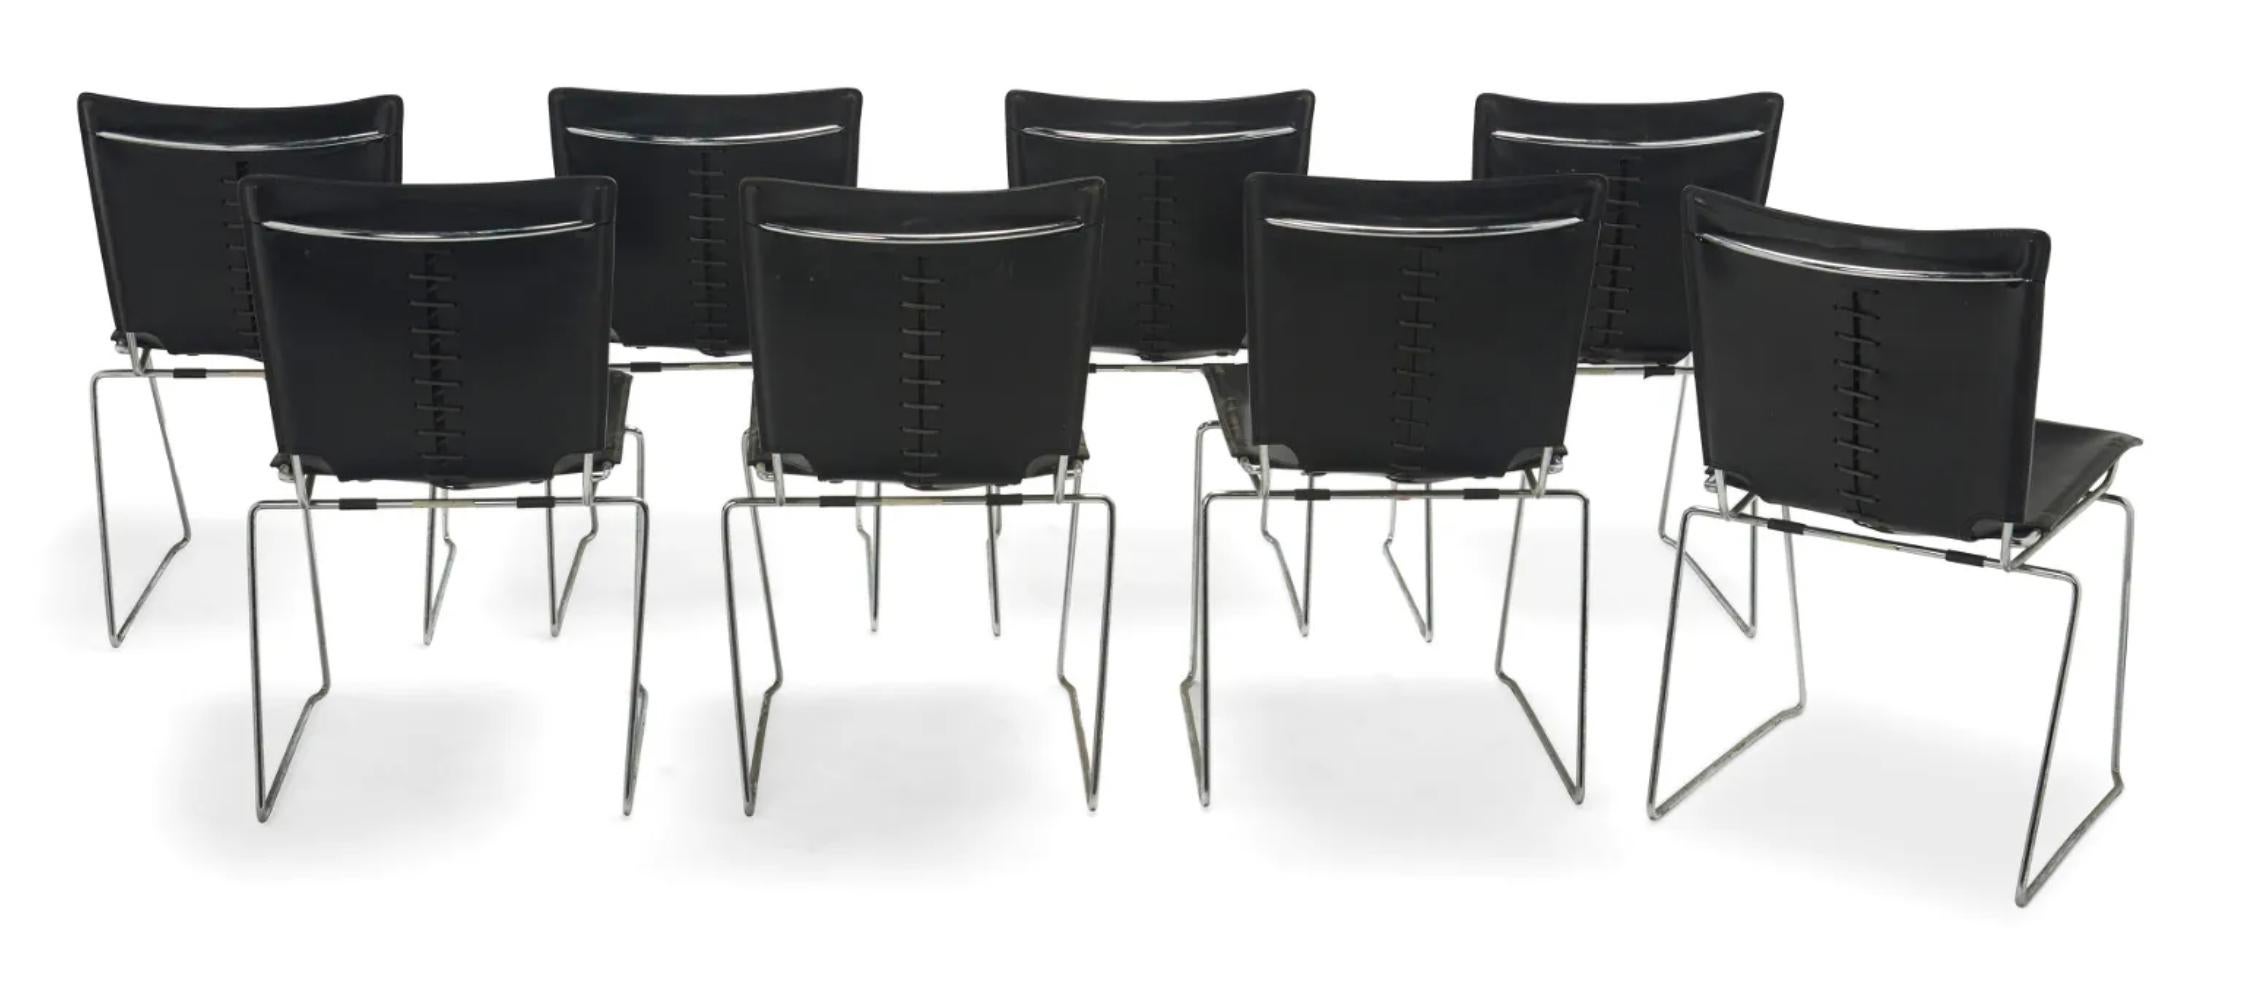 Unglaubliches Set aus 8 stapelbaren Stühlen von ICF (separat erhältlich) . Entworfen von Toyoda Hiroyuki. Dickes schwarzes Leder auf einem stark verchromten Sockel. Wunderschöne Details aus genähtem und geschnürtem Leder. Diese können leicht in